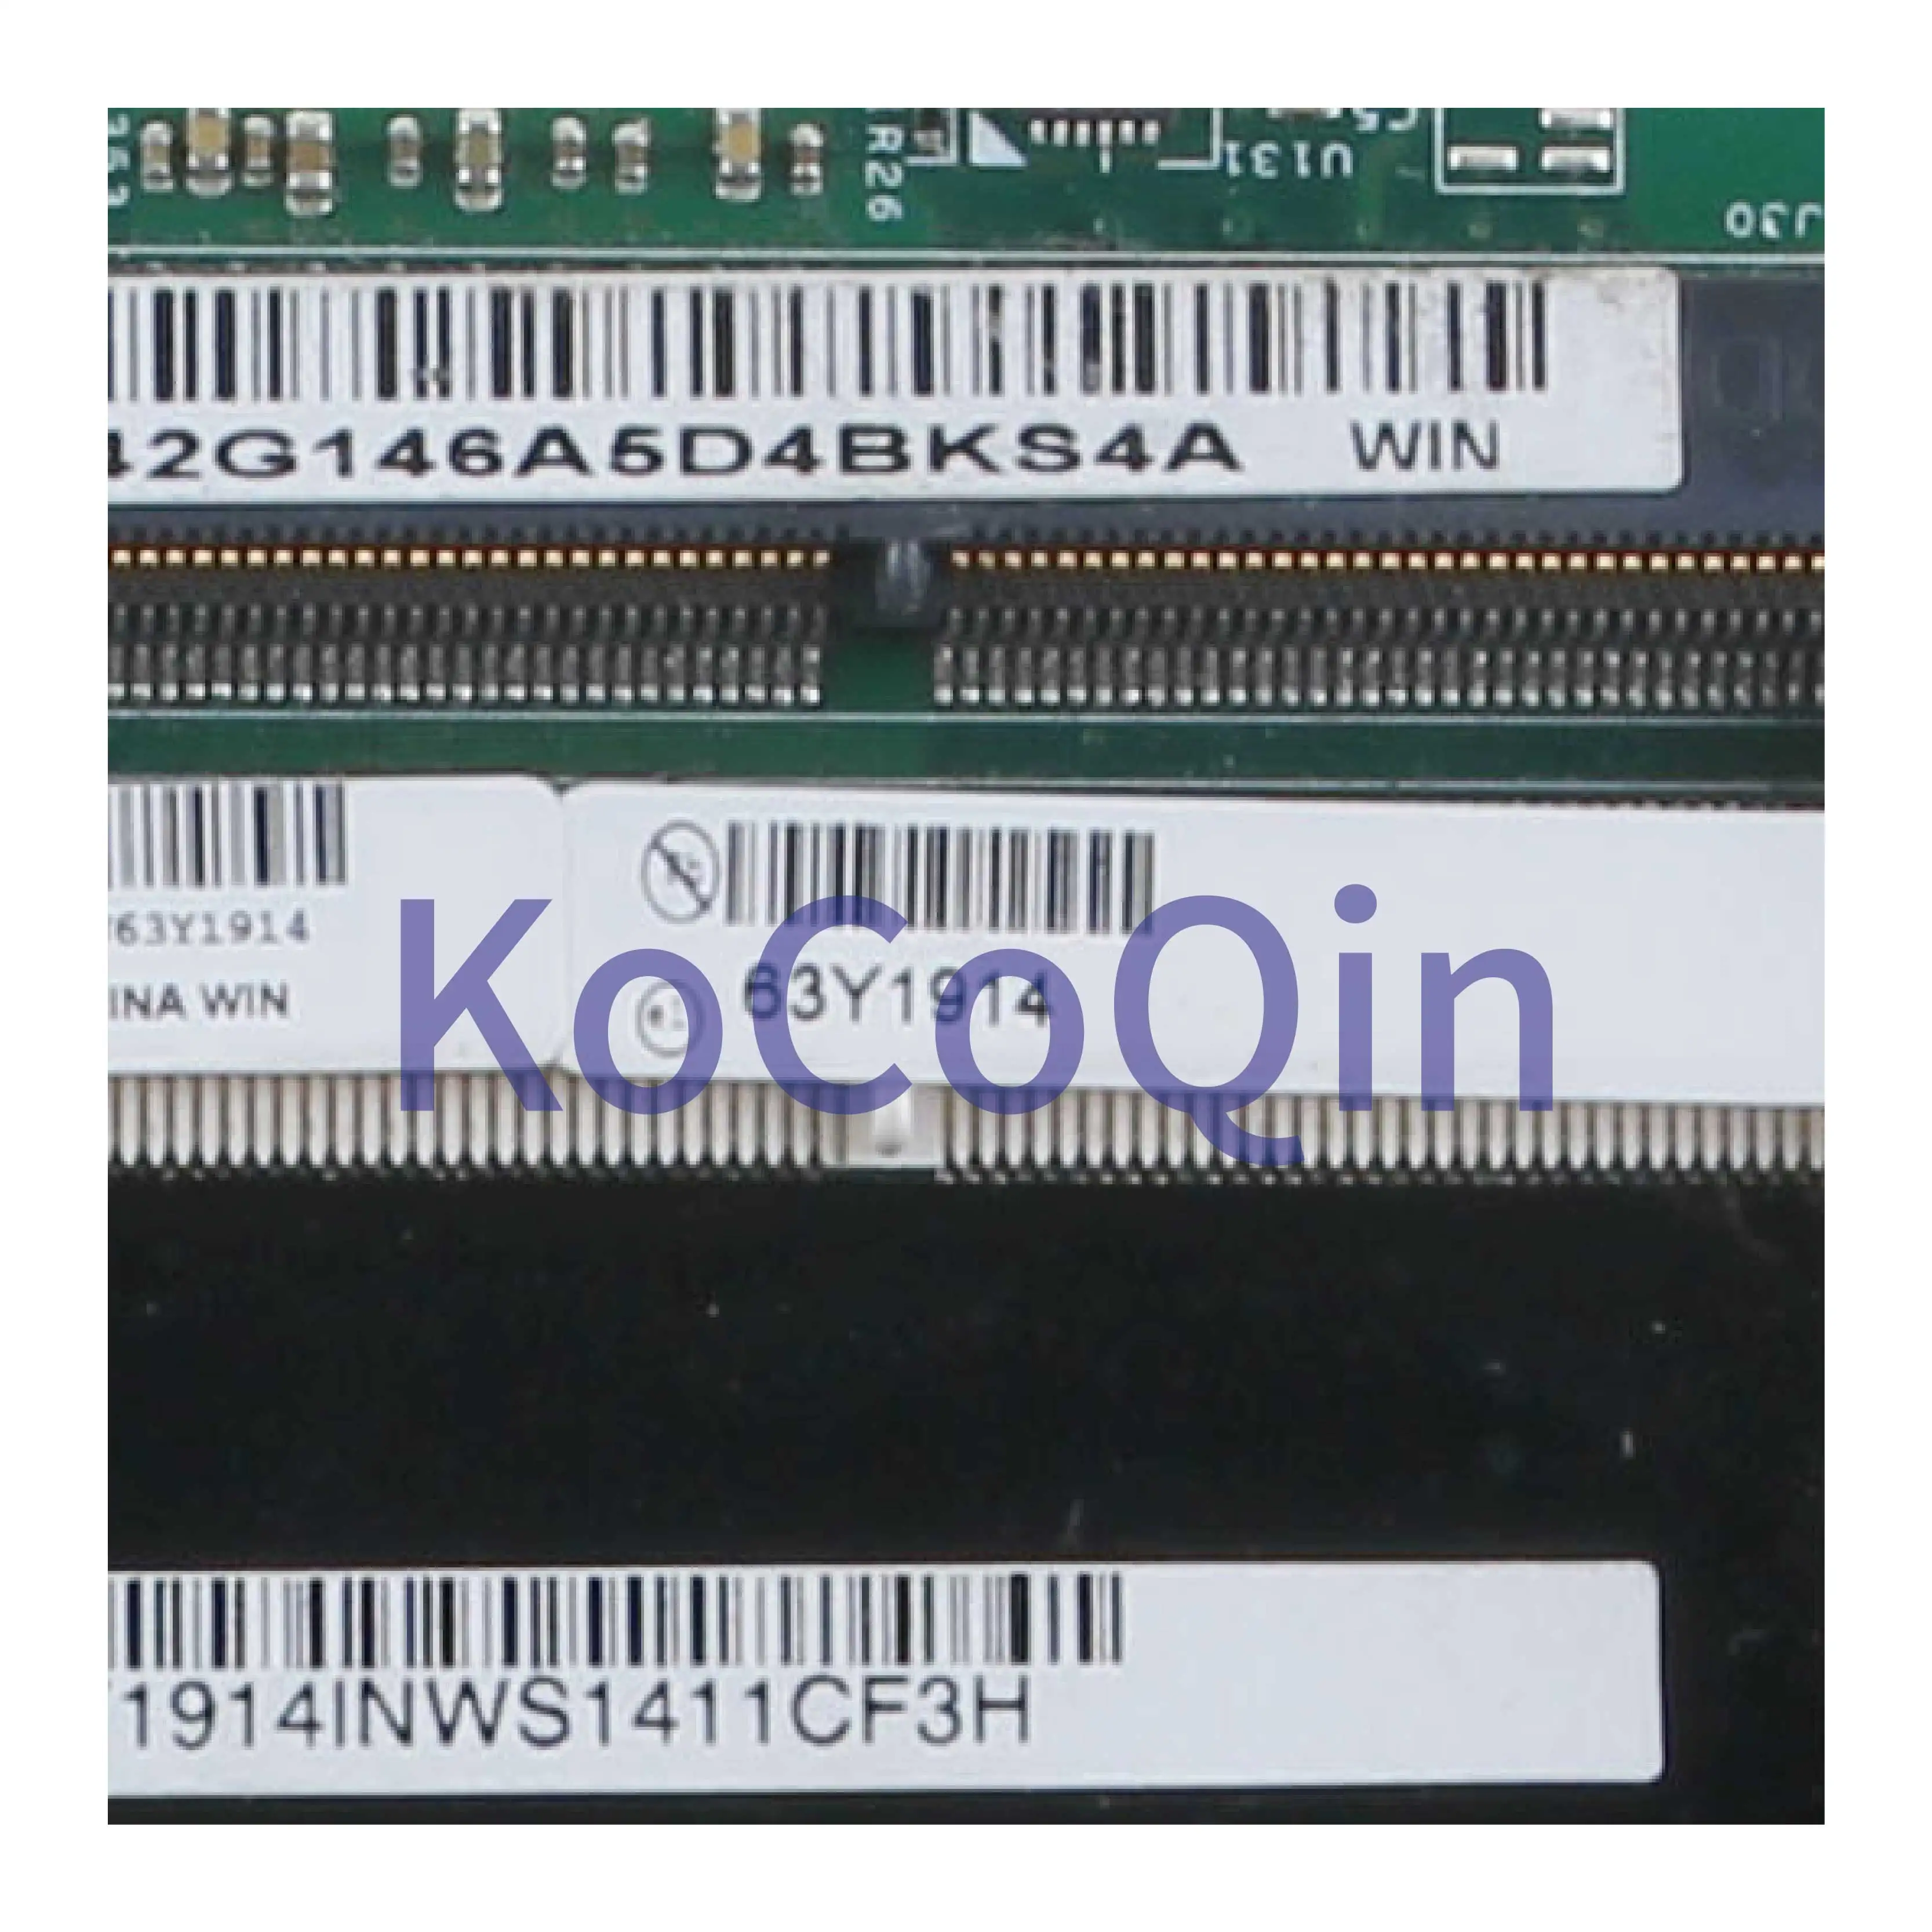 KoCoQin Laptop bundkort Til LENOVO Thinkpad T420S Core I5-2520M Bundkort 63Y1914 H0223-4 48.4KE58.041 QM67